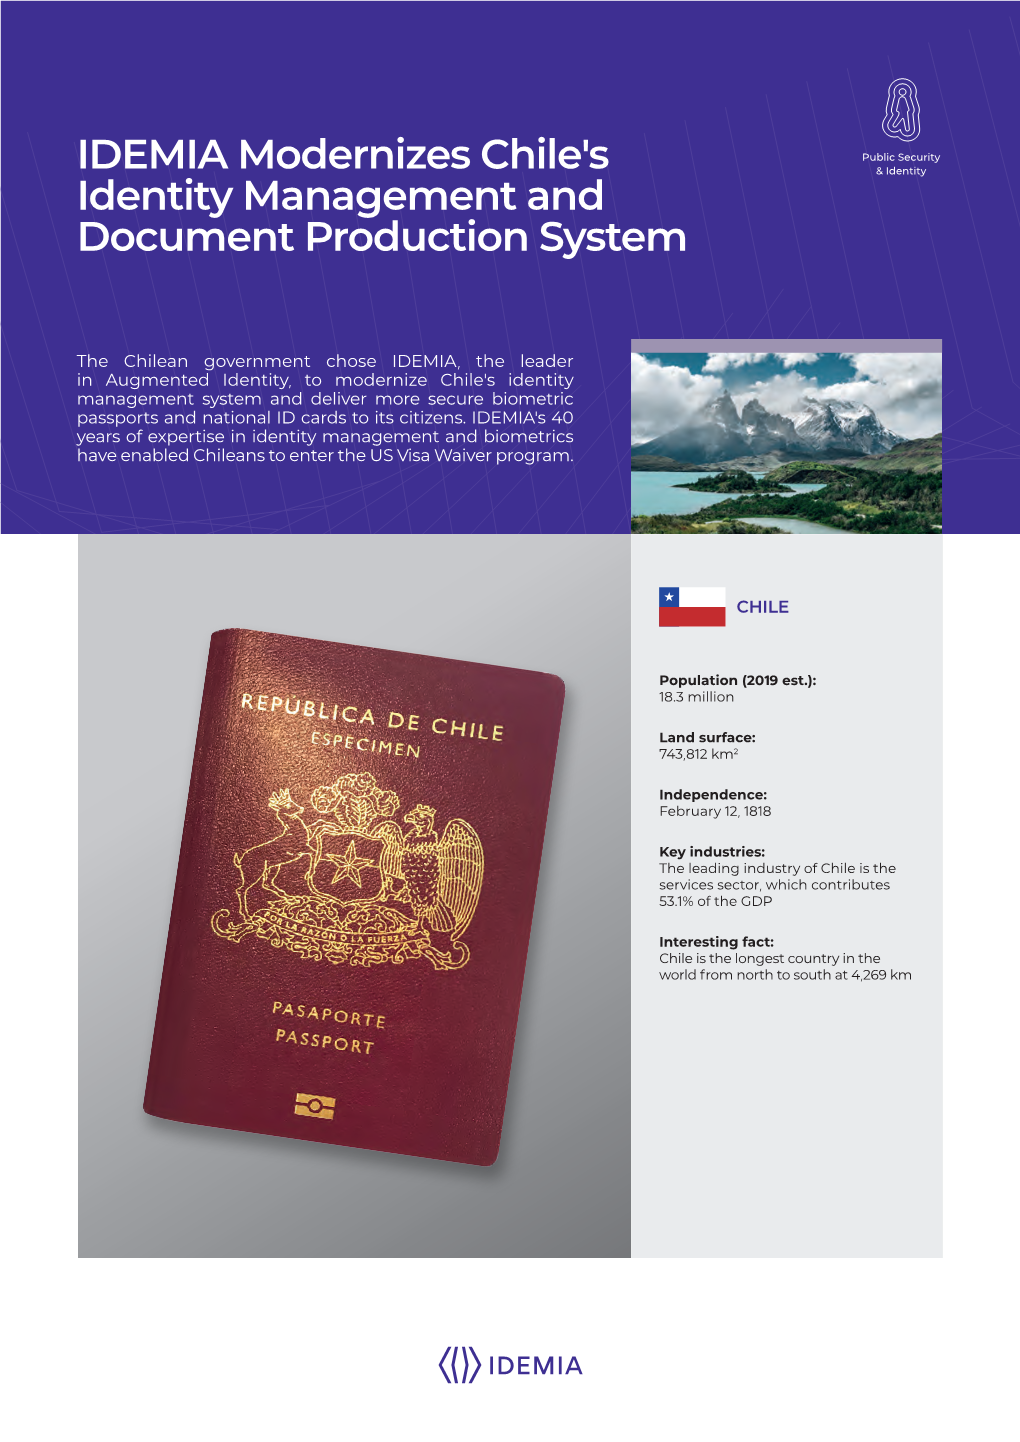 IDEMIA Modernizes Chile's Identity Management and Document